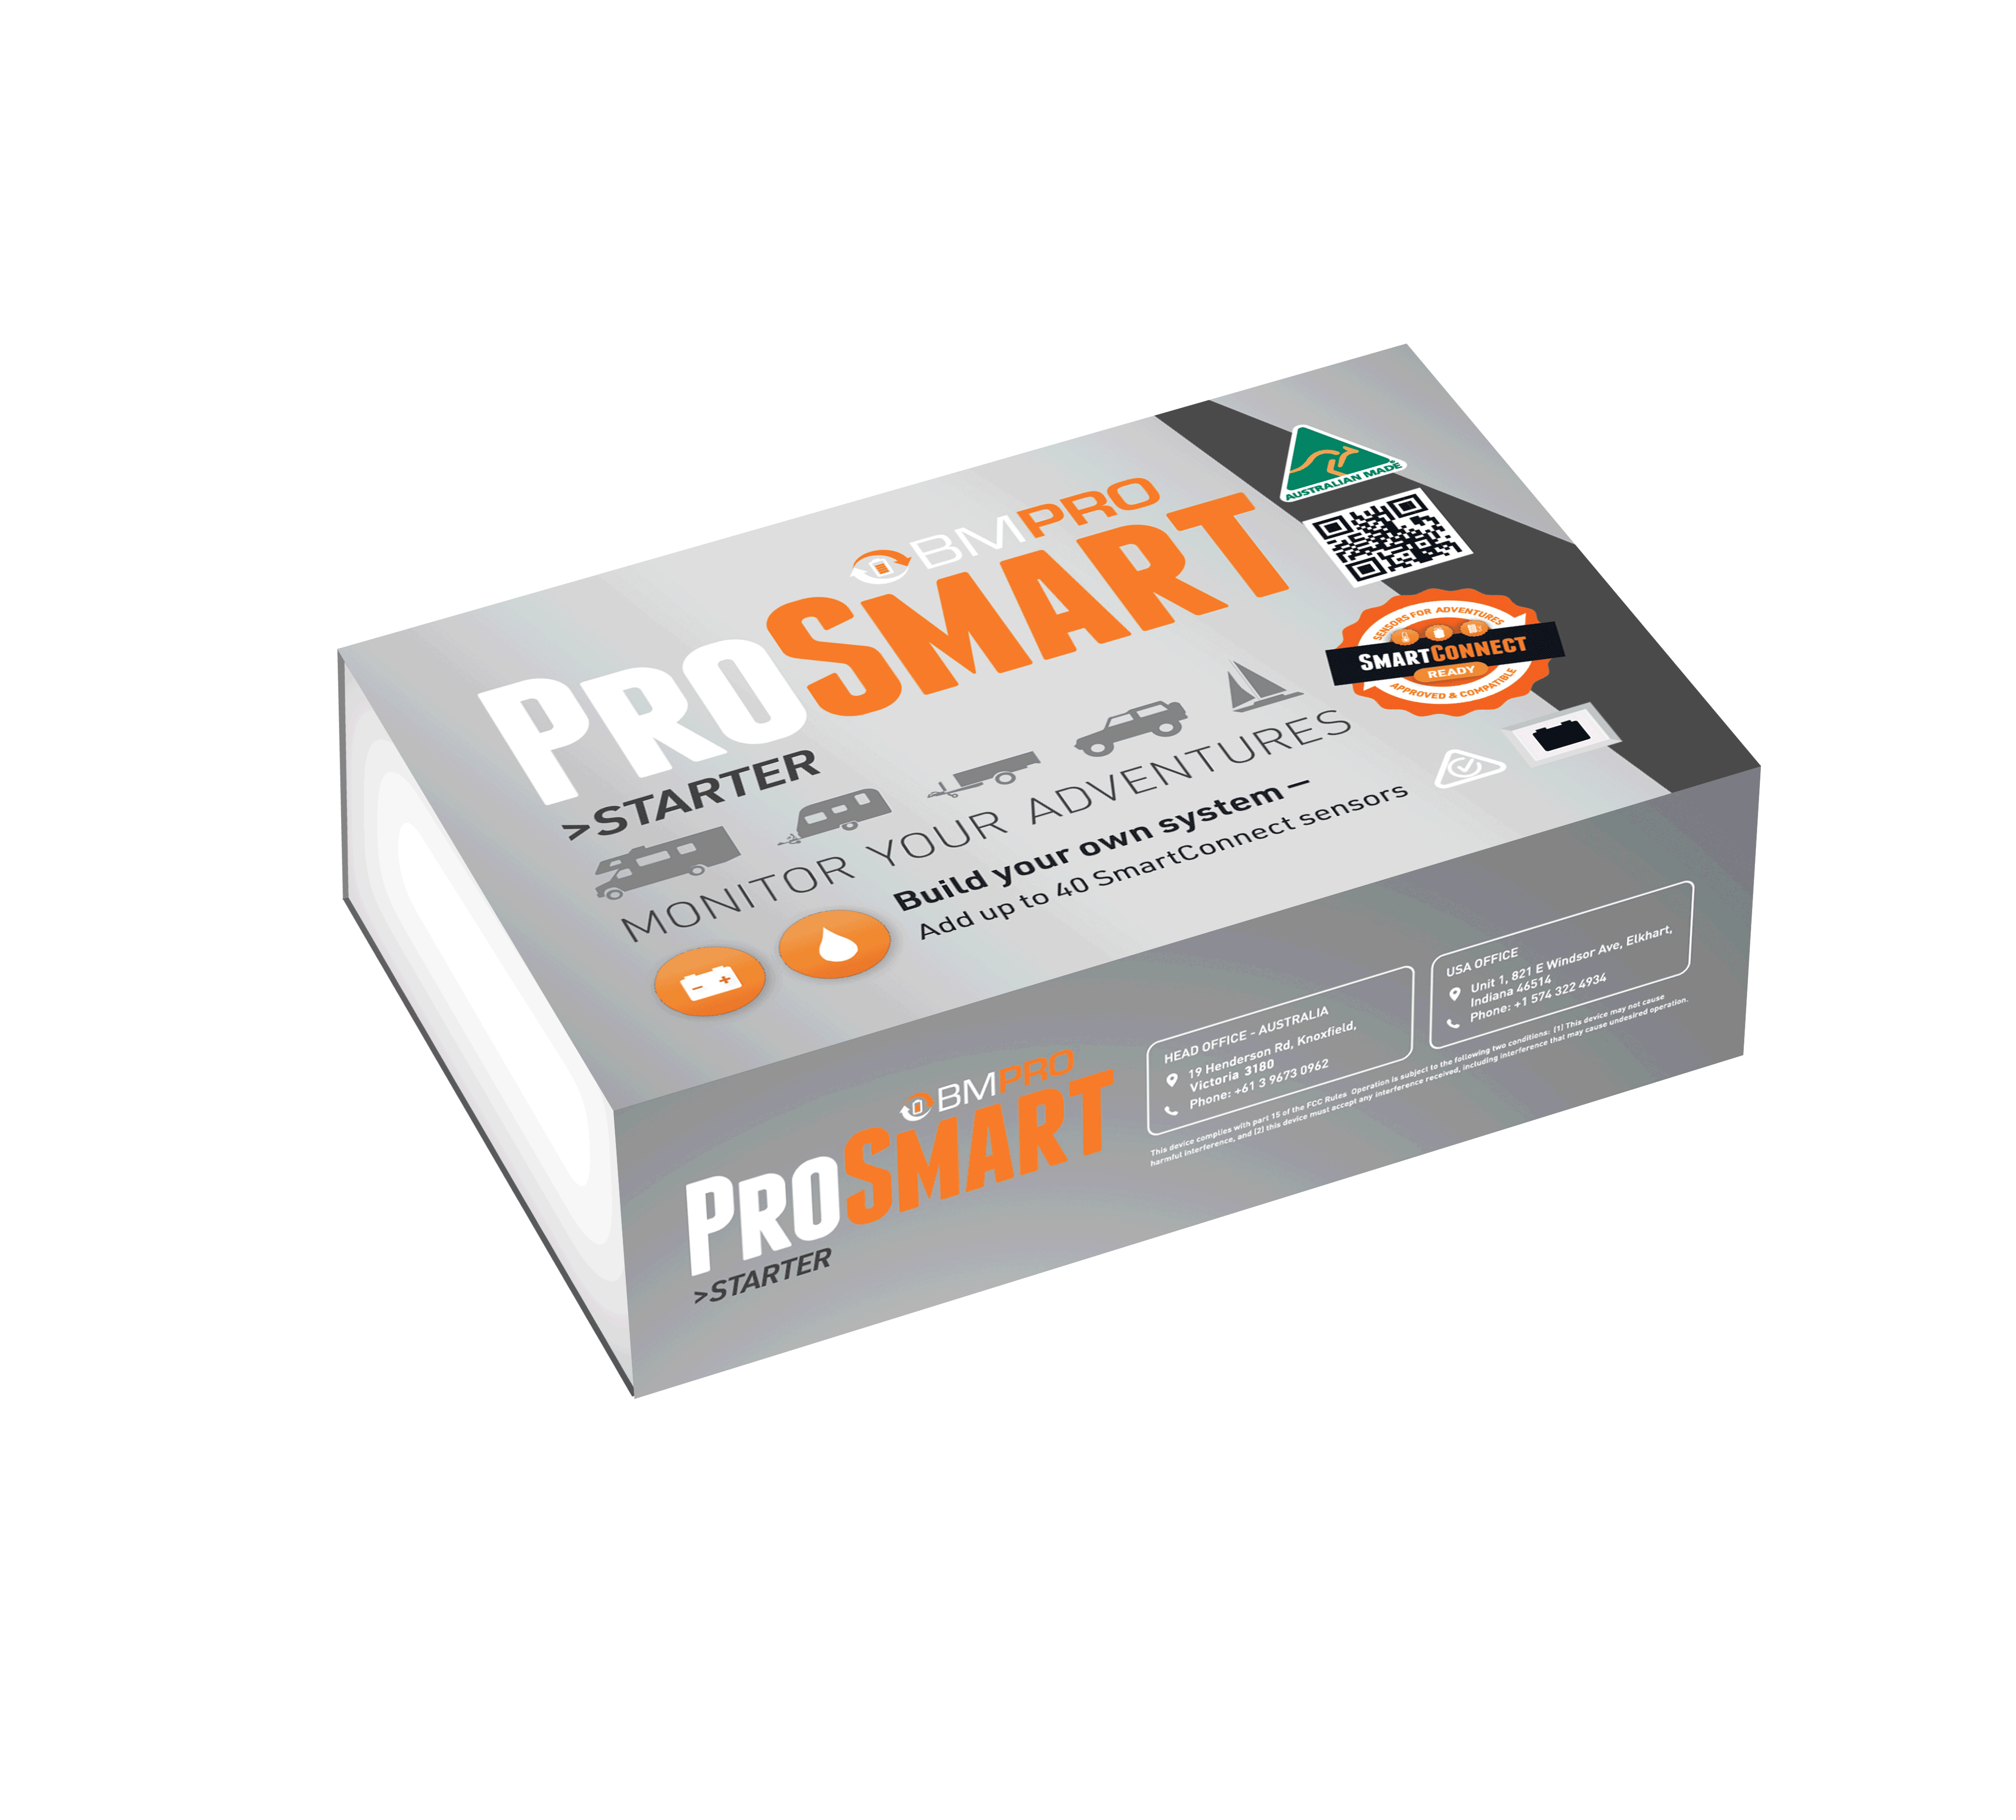 ProSmart Starter kit